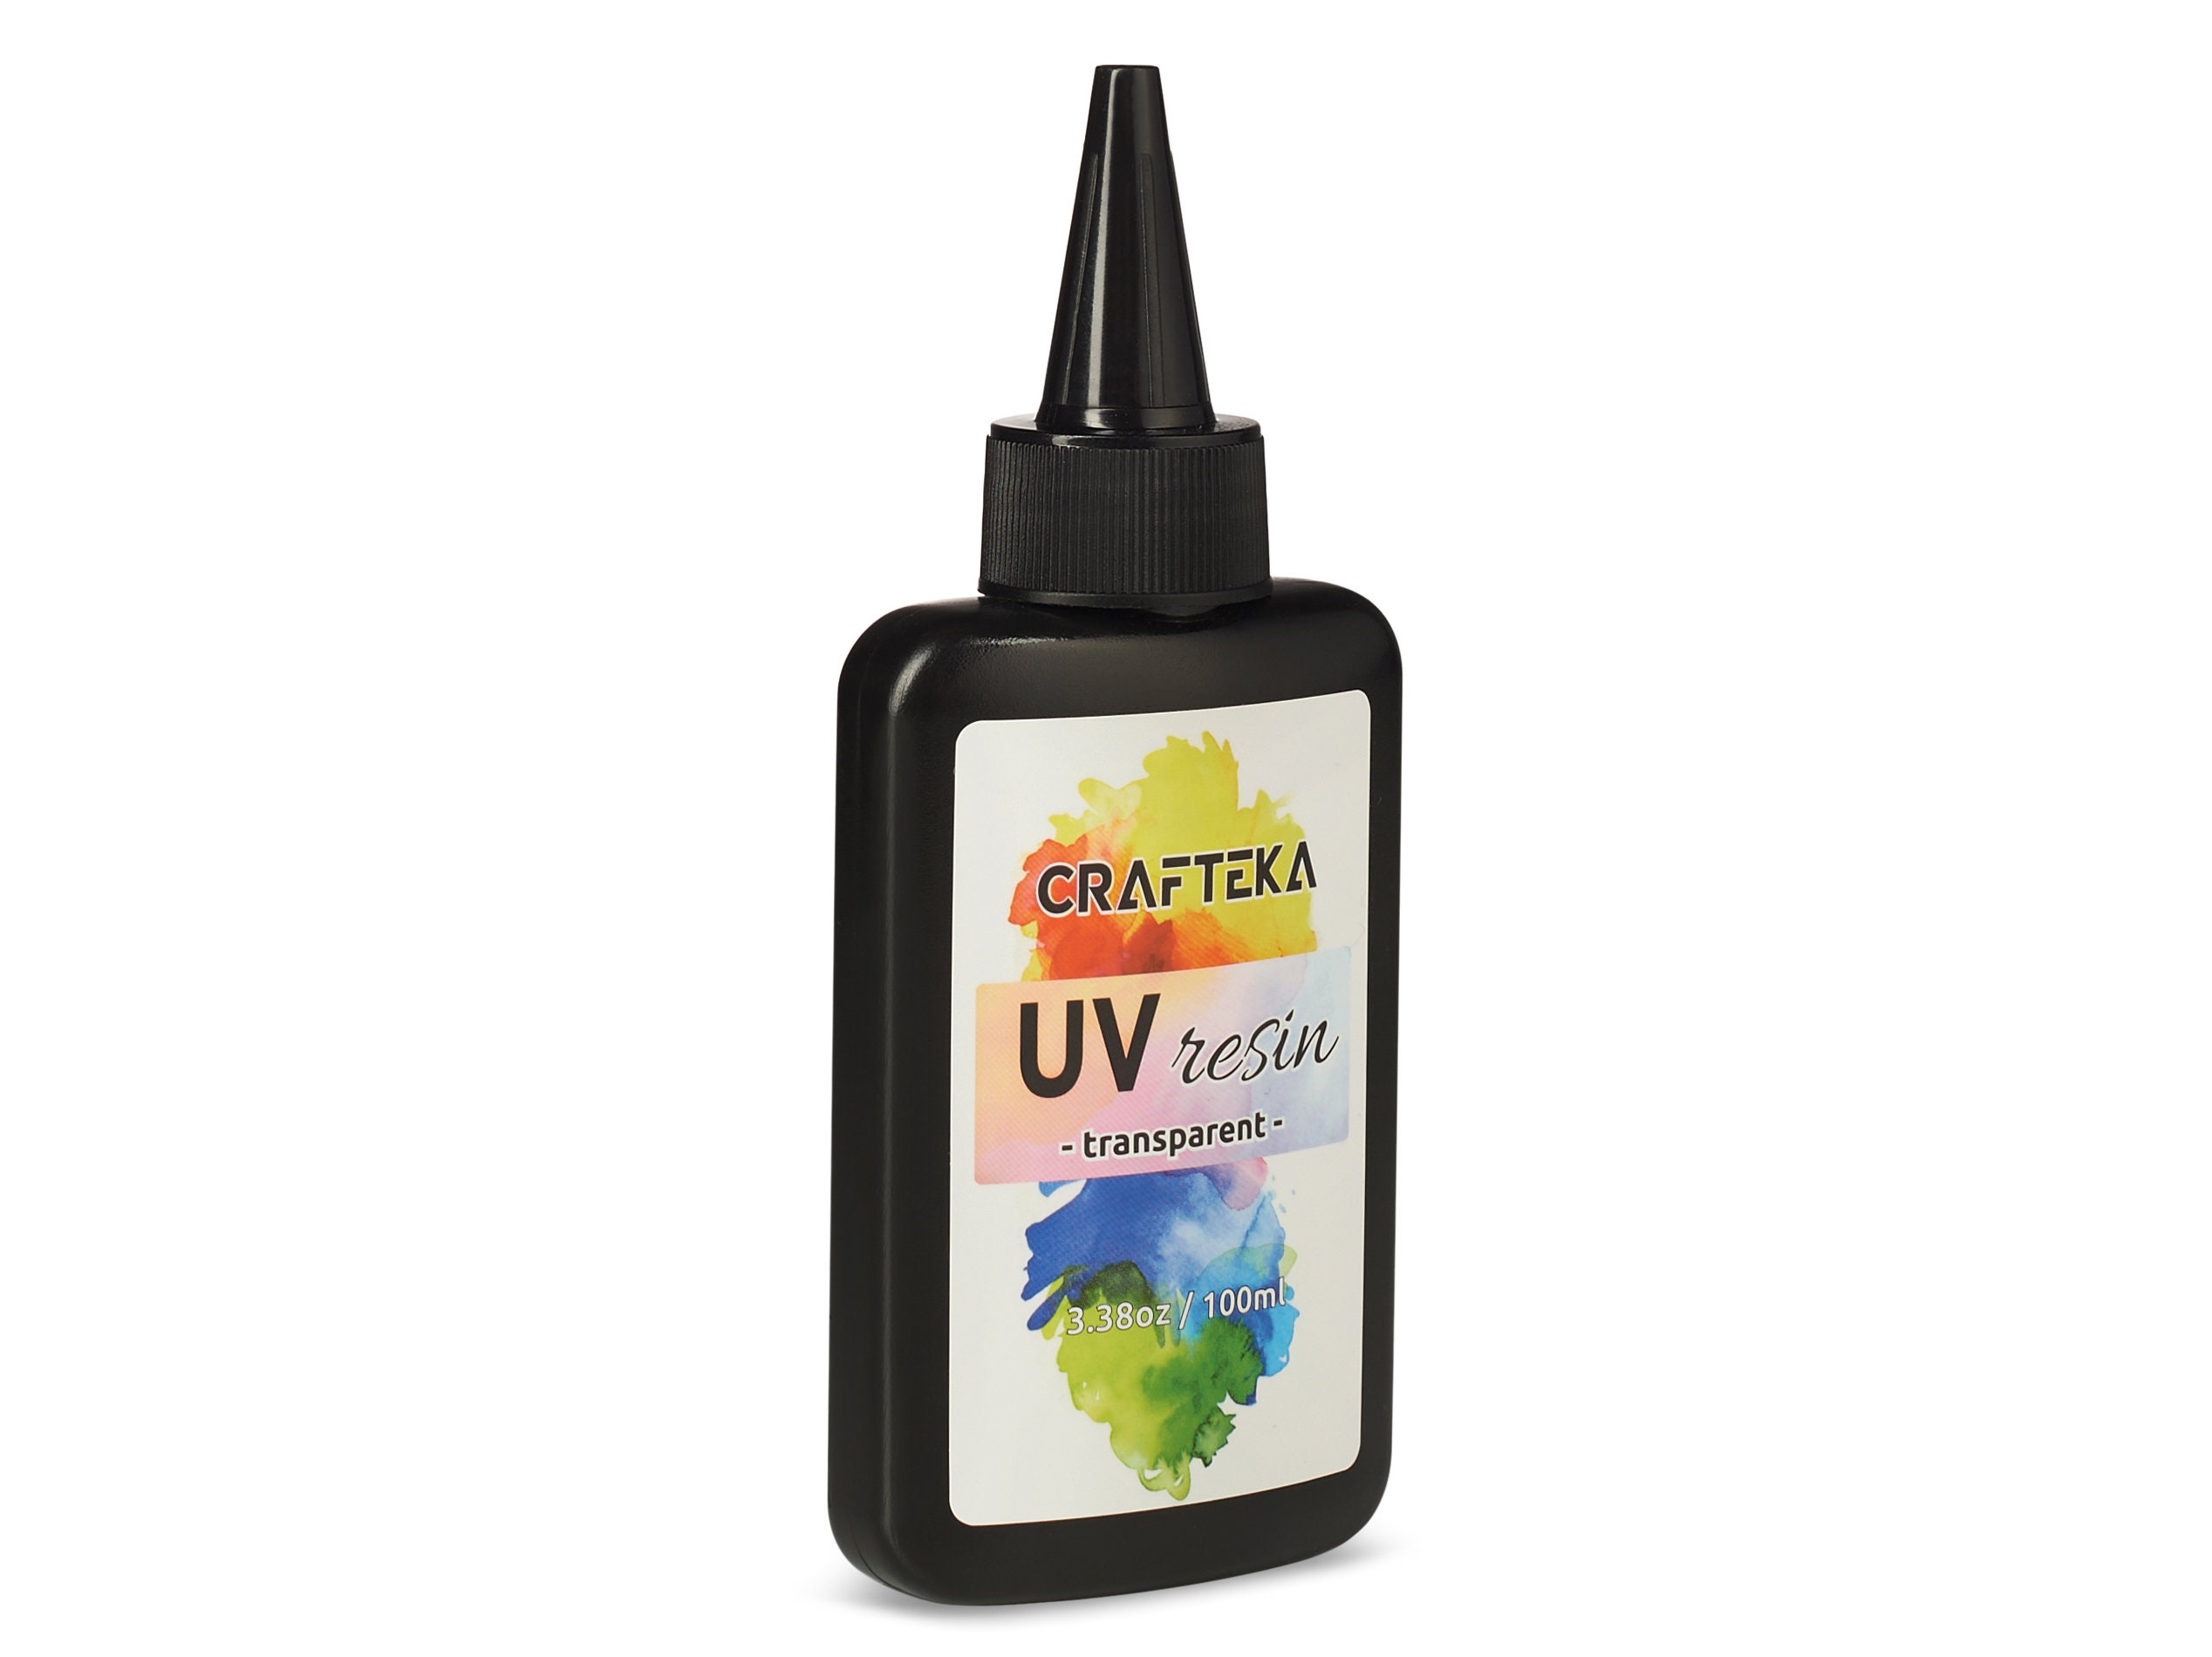 UV Resin Starter Kit With Light, UV Resin, UV Resin Dye, Resin Mold, Resin  Supplies, and Glitter Gifts for Her 